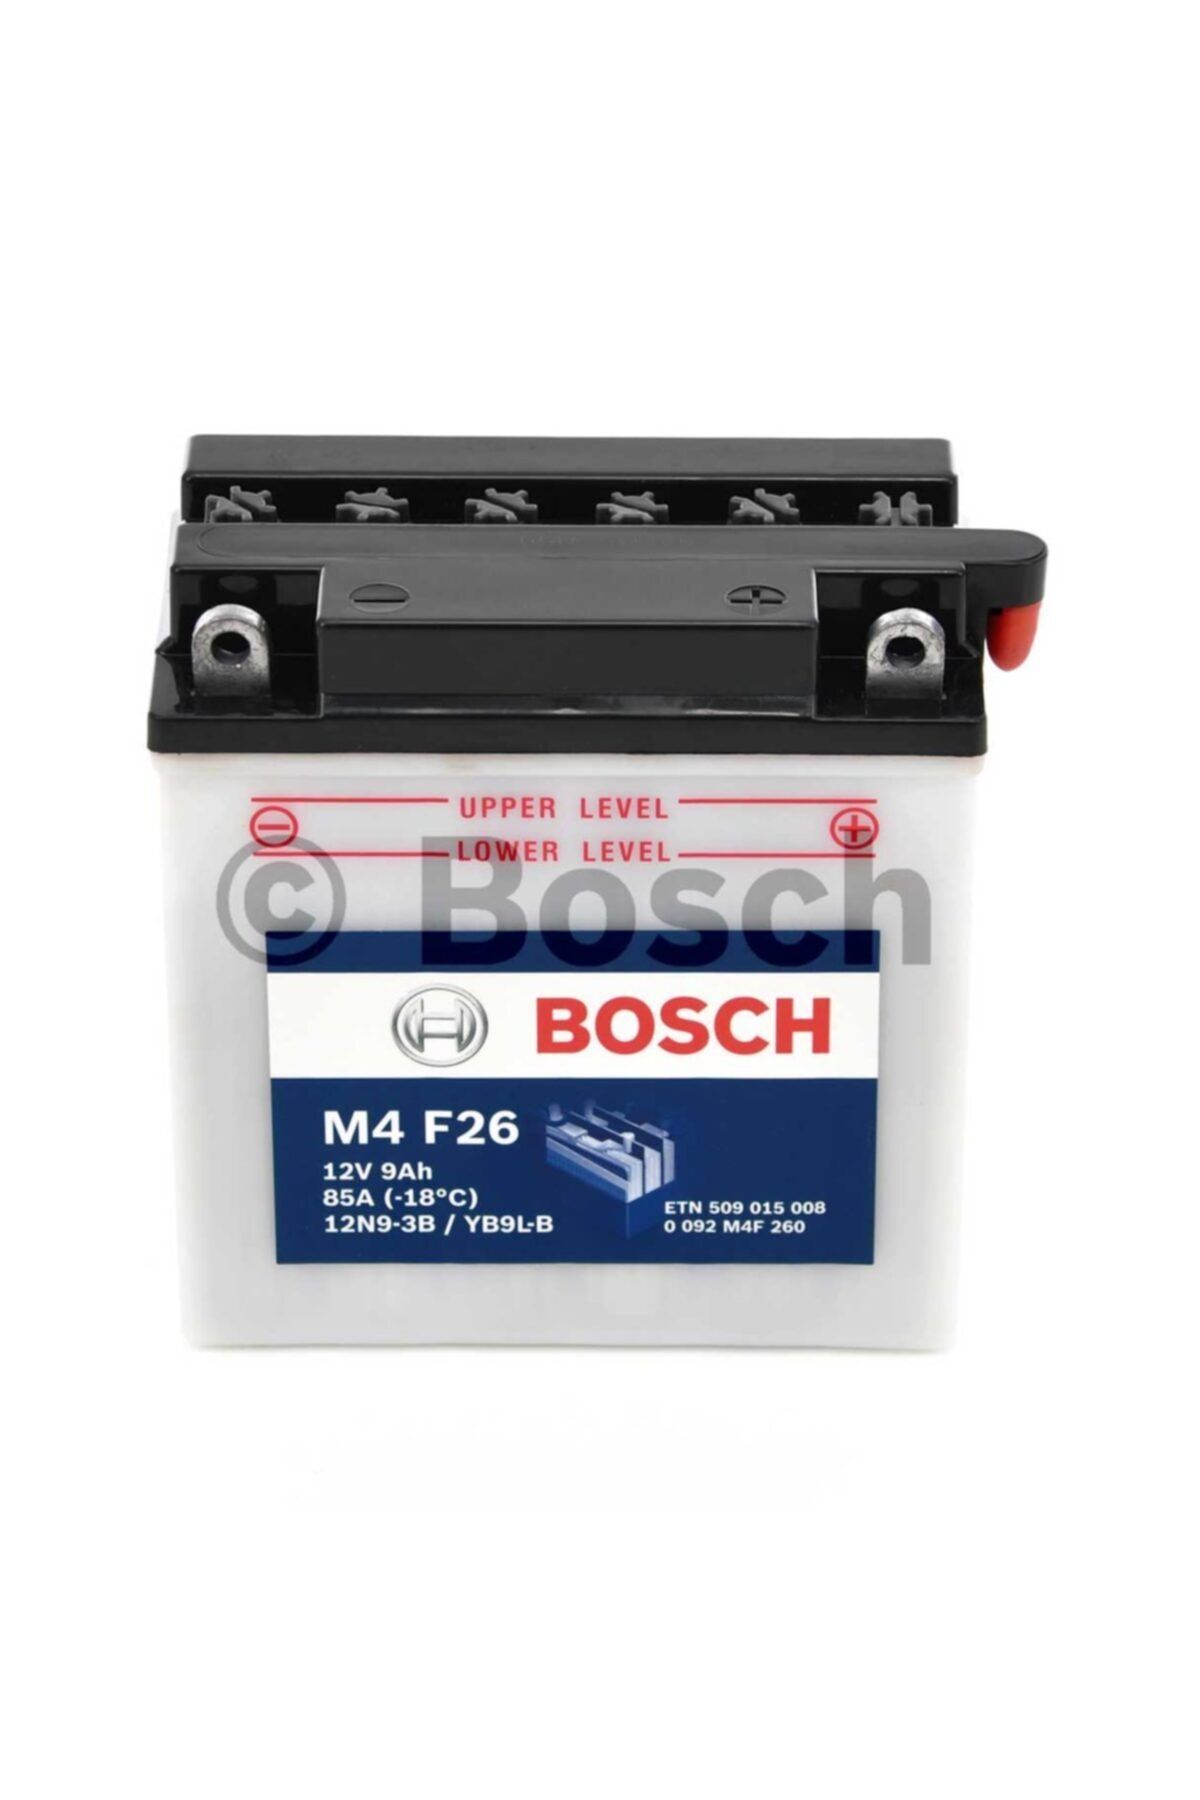 Bosch M4f26 12n9/yb9l 12volt 9amper Motosiklet Aküsü